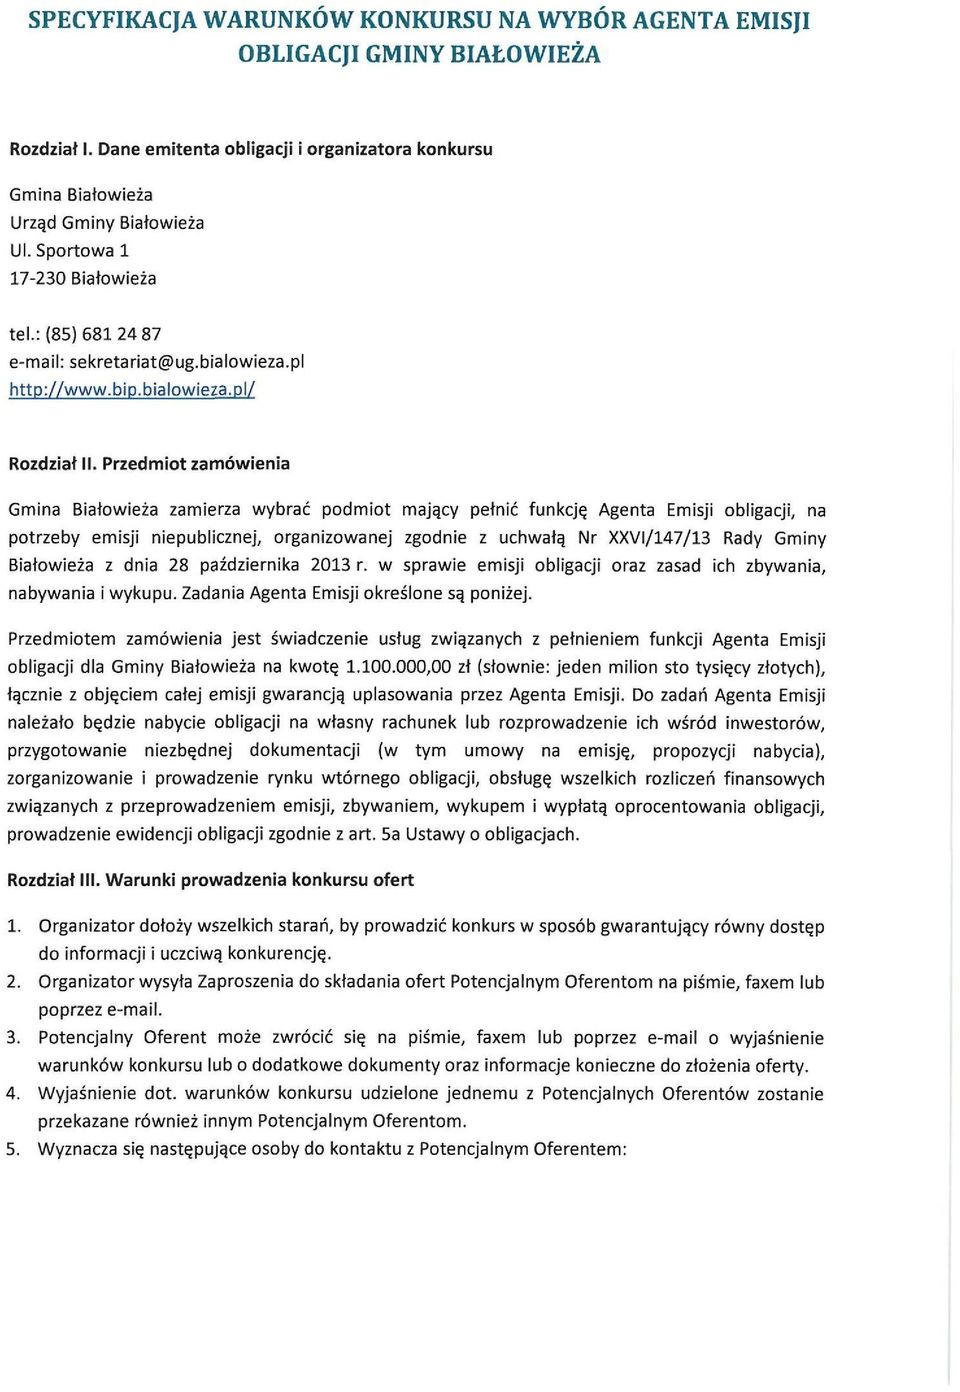 Przedmiot zamówienia Gmina Białowieża zamierza wybrać podmiot mający pełnić funkcję Agenta Emisji obligacji, na potrzeby emisji niepublicznej, organizowanej zgodnie z uchwałą Nr XXVI/147/13 Rady